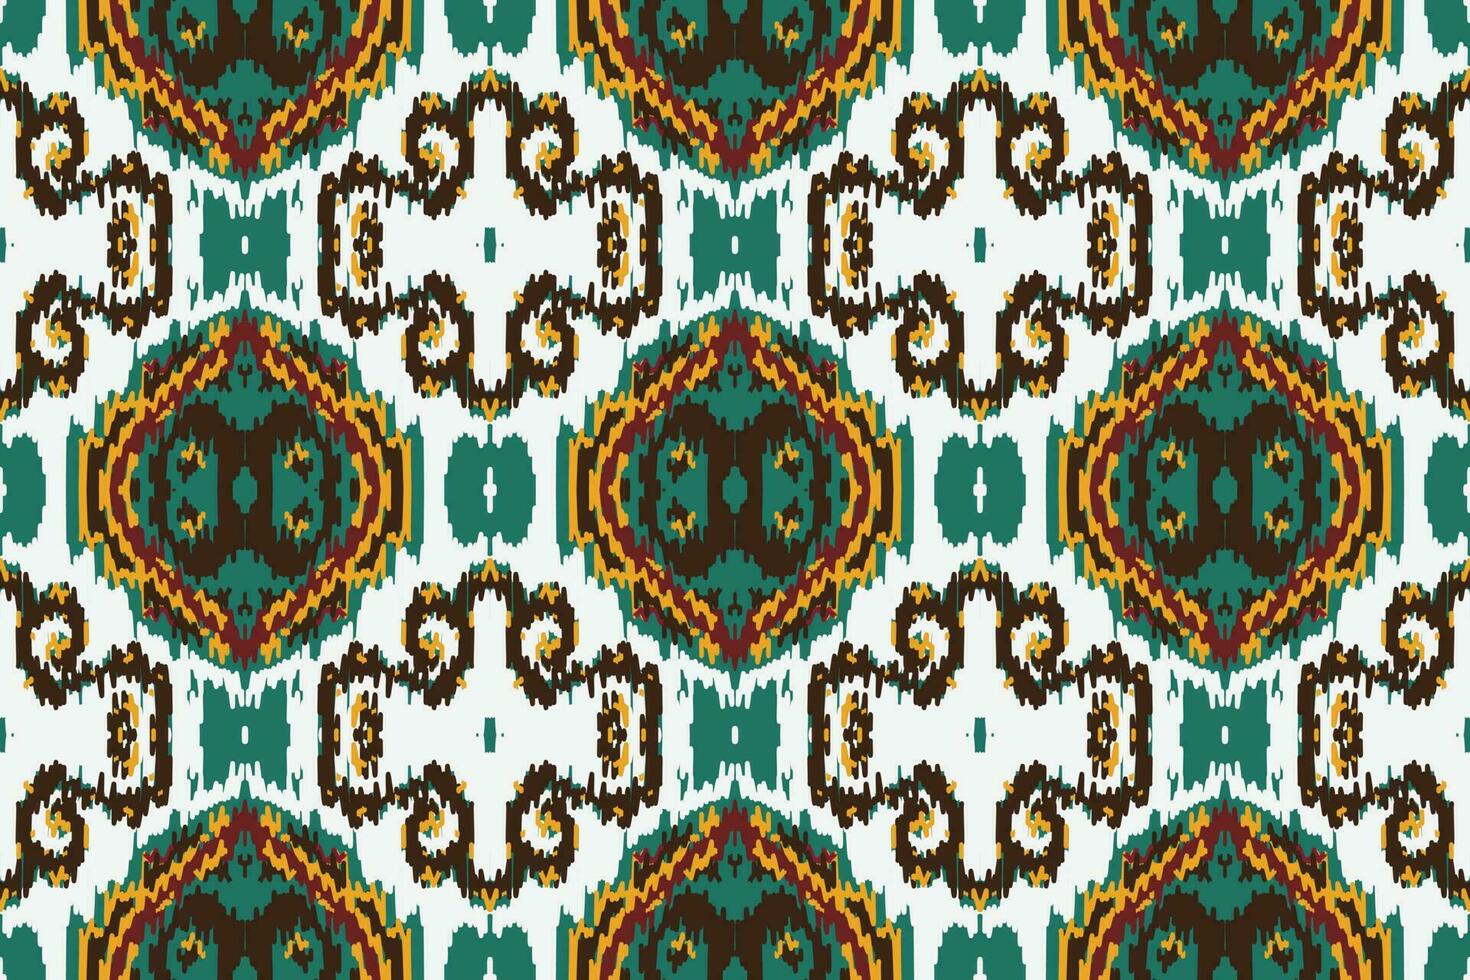 afrikanisch Ikat Damast Paisley Stickerei Hintergrund. geometrisch ethnisch orientalisch Muster traditionell. Ikat aztekisch Stil abstrakt Vektor Illustration. Design zum drucken Textur, Stoff, Saree, Sari, Teppich.